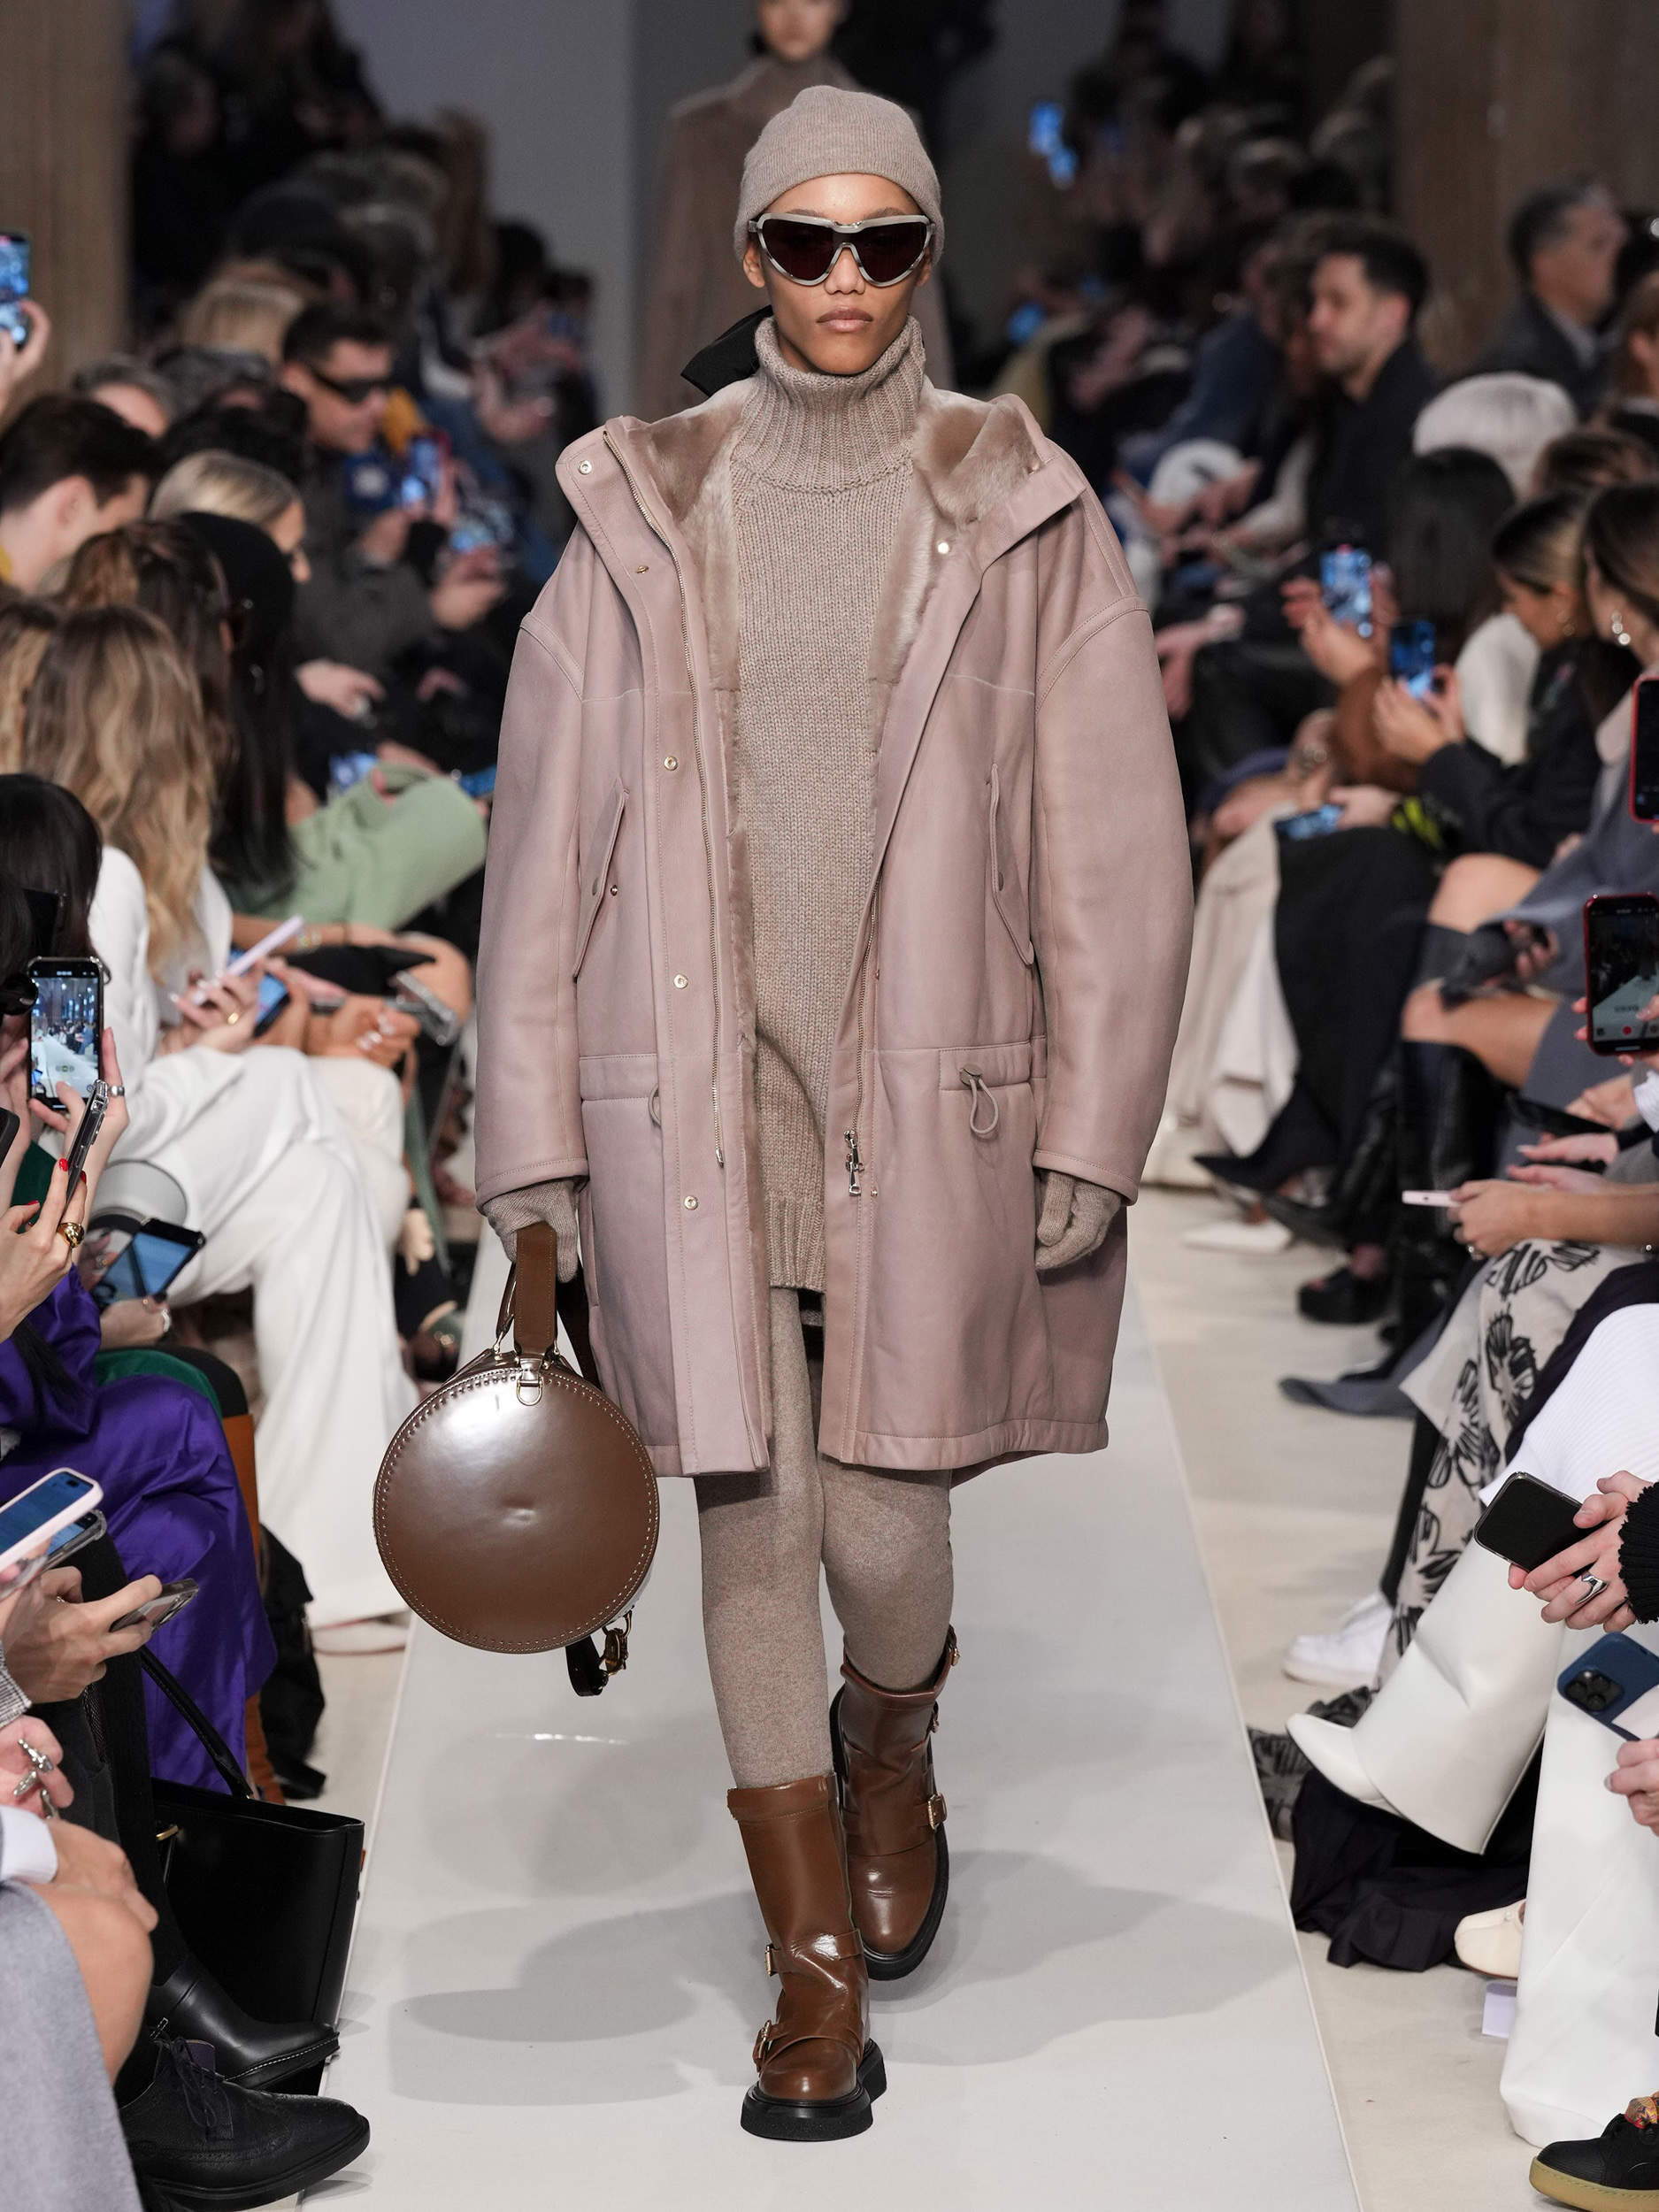 Max Mara: El punto y los abrigos de estilo 'casual' dominan la colección